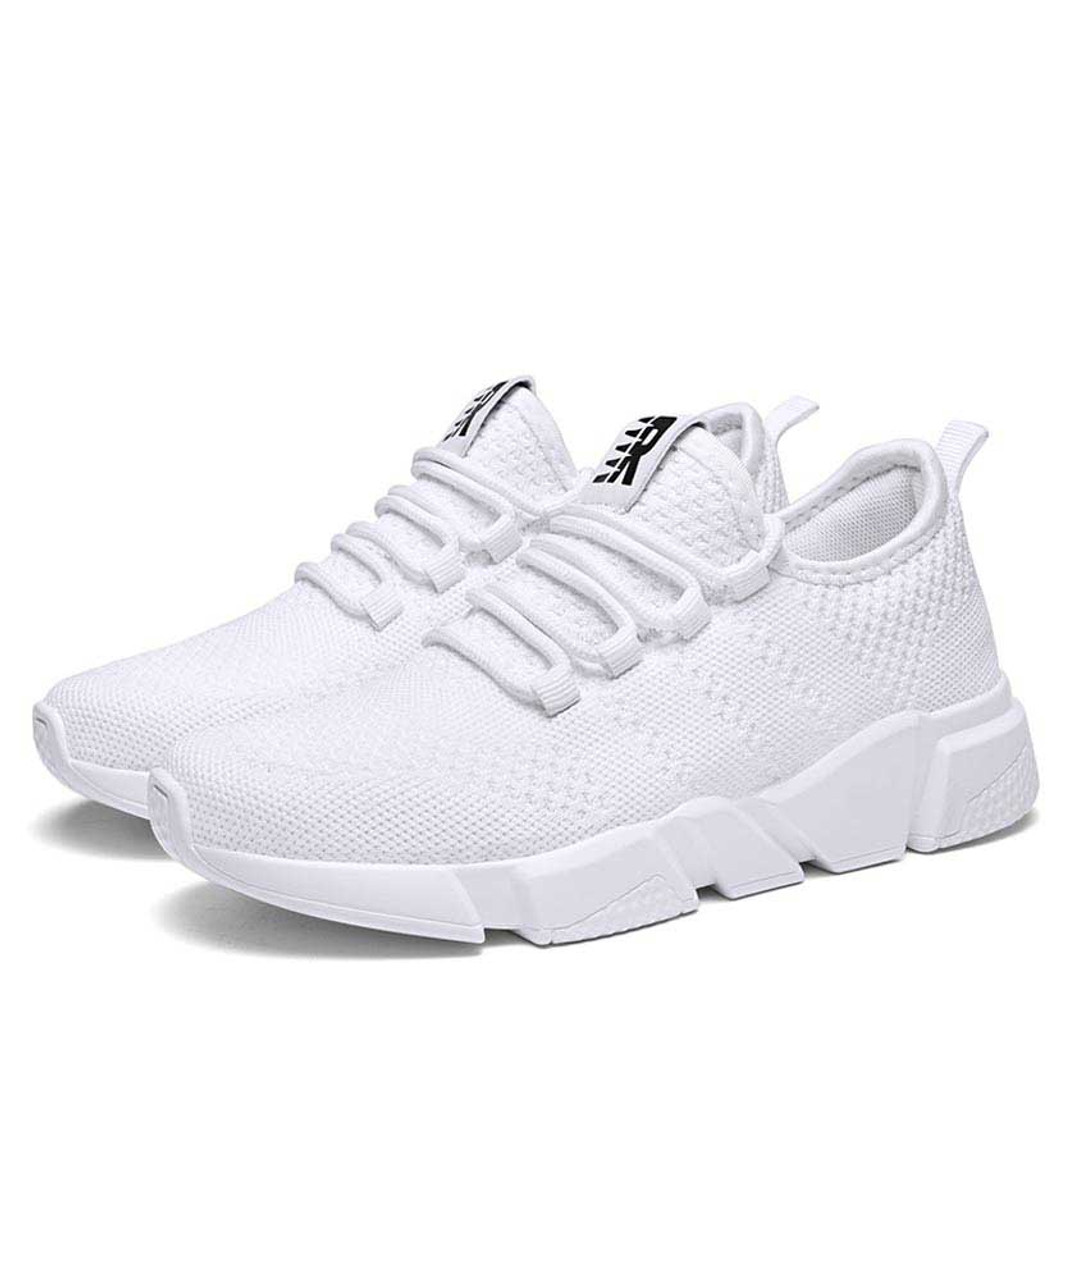 White flyknit R label pattern shoe sneaker | Womens sneakers shoes ...